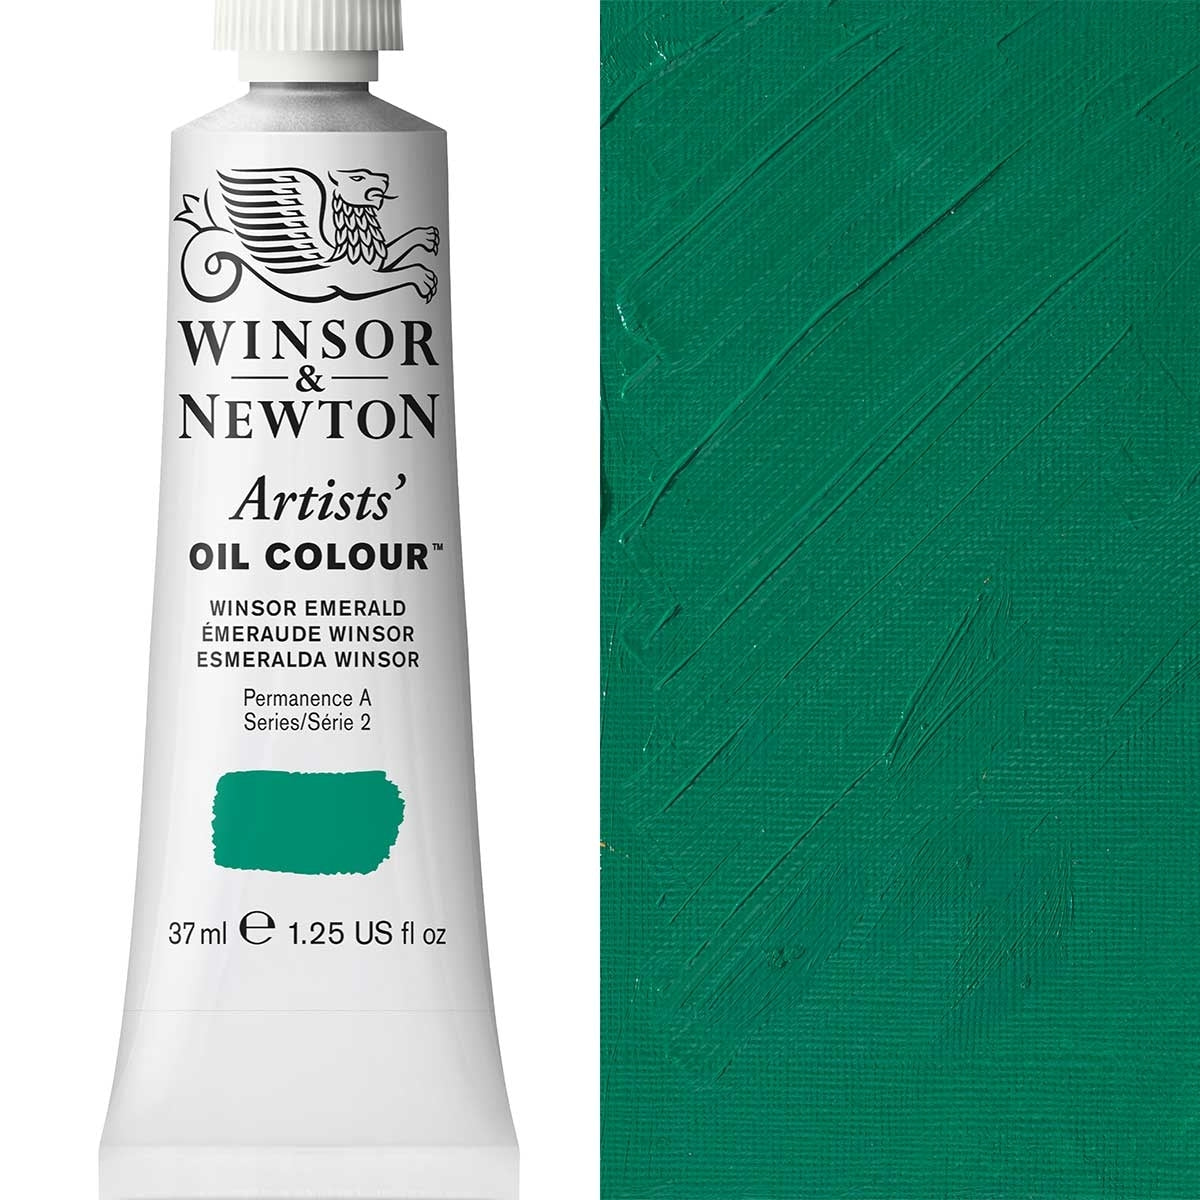 Winsor e Newton - Colore olio degli artisti - 37ml - Winsor Emerald